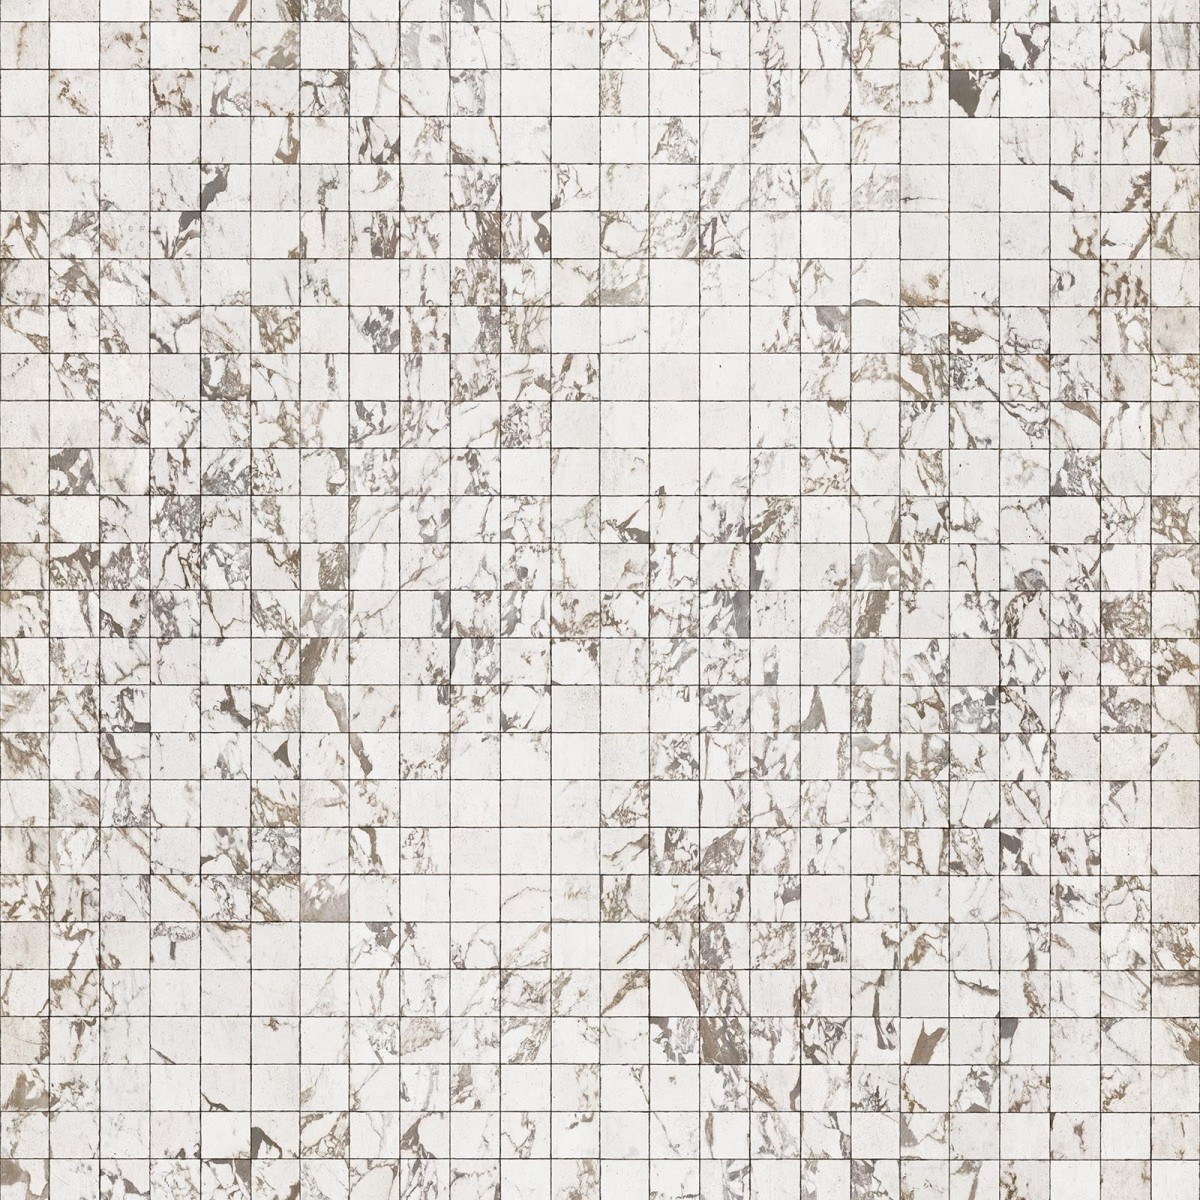 Tapet designer Materials Marble, Tiles 8.1x7.7cm, White by Piet Hein Eek, NLXL, 4.9mp / rola, Tapet Exclusivist 